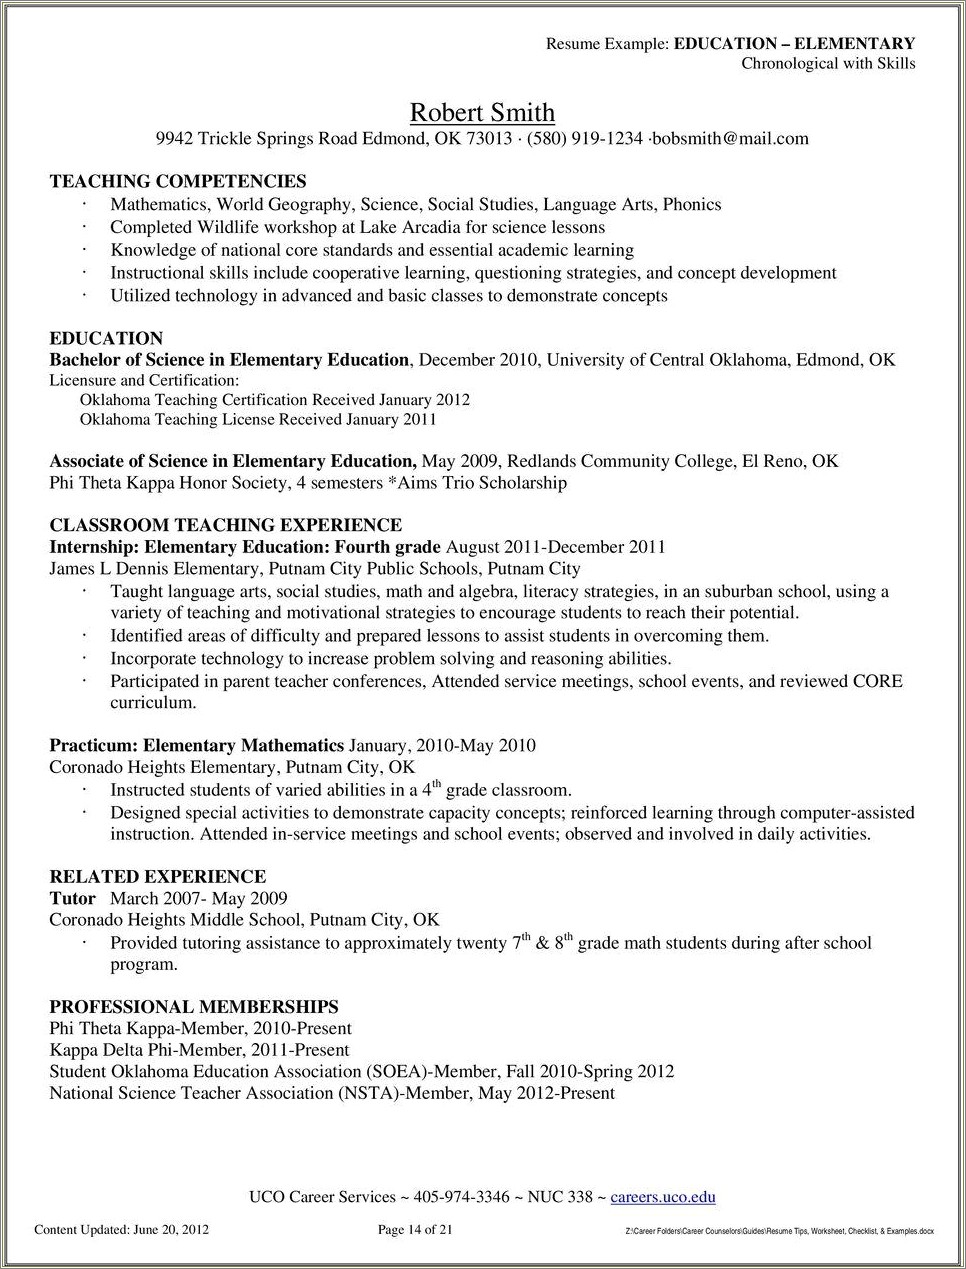 Phi Beta Kappa Resume Example Resume Example Gallery